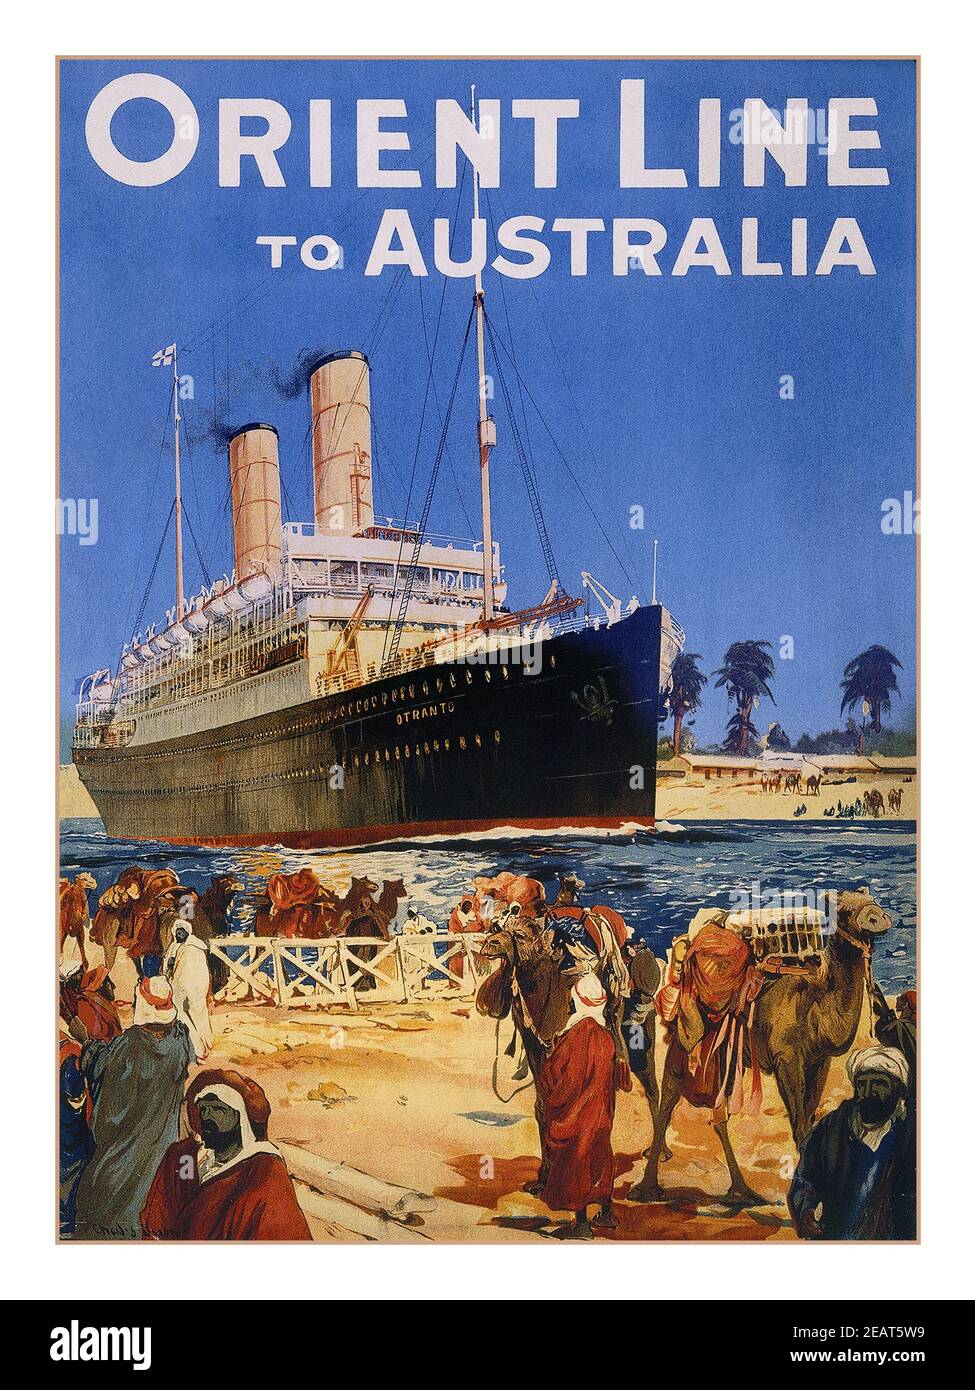 Vintage 1912 Ocean Liner Steamship Orient Line nach Australien die Orient Steam Navigation Company, auch bekannt als die Orient Line, war eine britische Reederei mit Wurzeln zurück ins späte 18th. Jahrhundert. Seit dem frühen 20th. Jahrhundert begann eine Vereinigung mit P&O, die 51 zu 1919% Aktionär wurde und 1966 in der Orient Line gipfelte, die vollständig in dieses Unternehmen aufgenommen wurde. Stockfoto